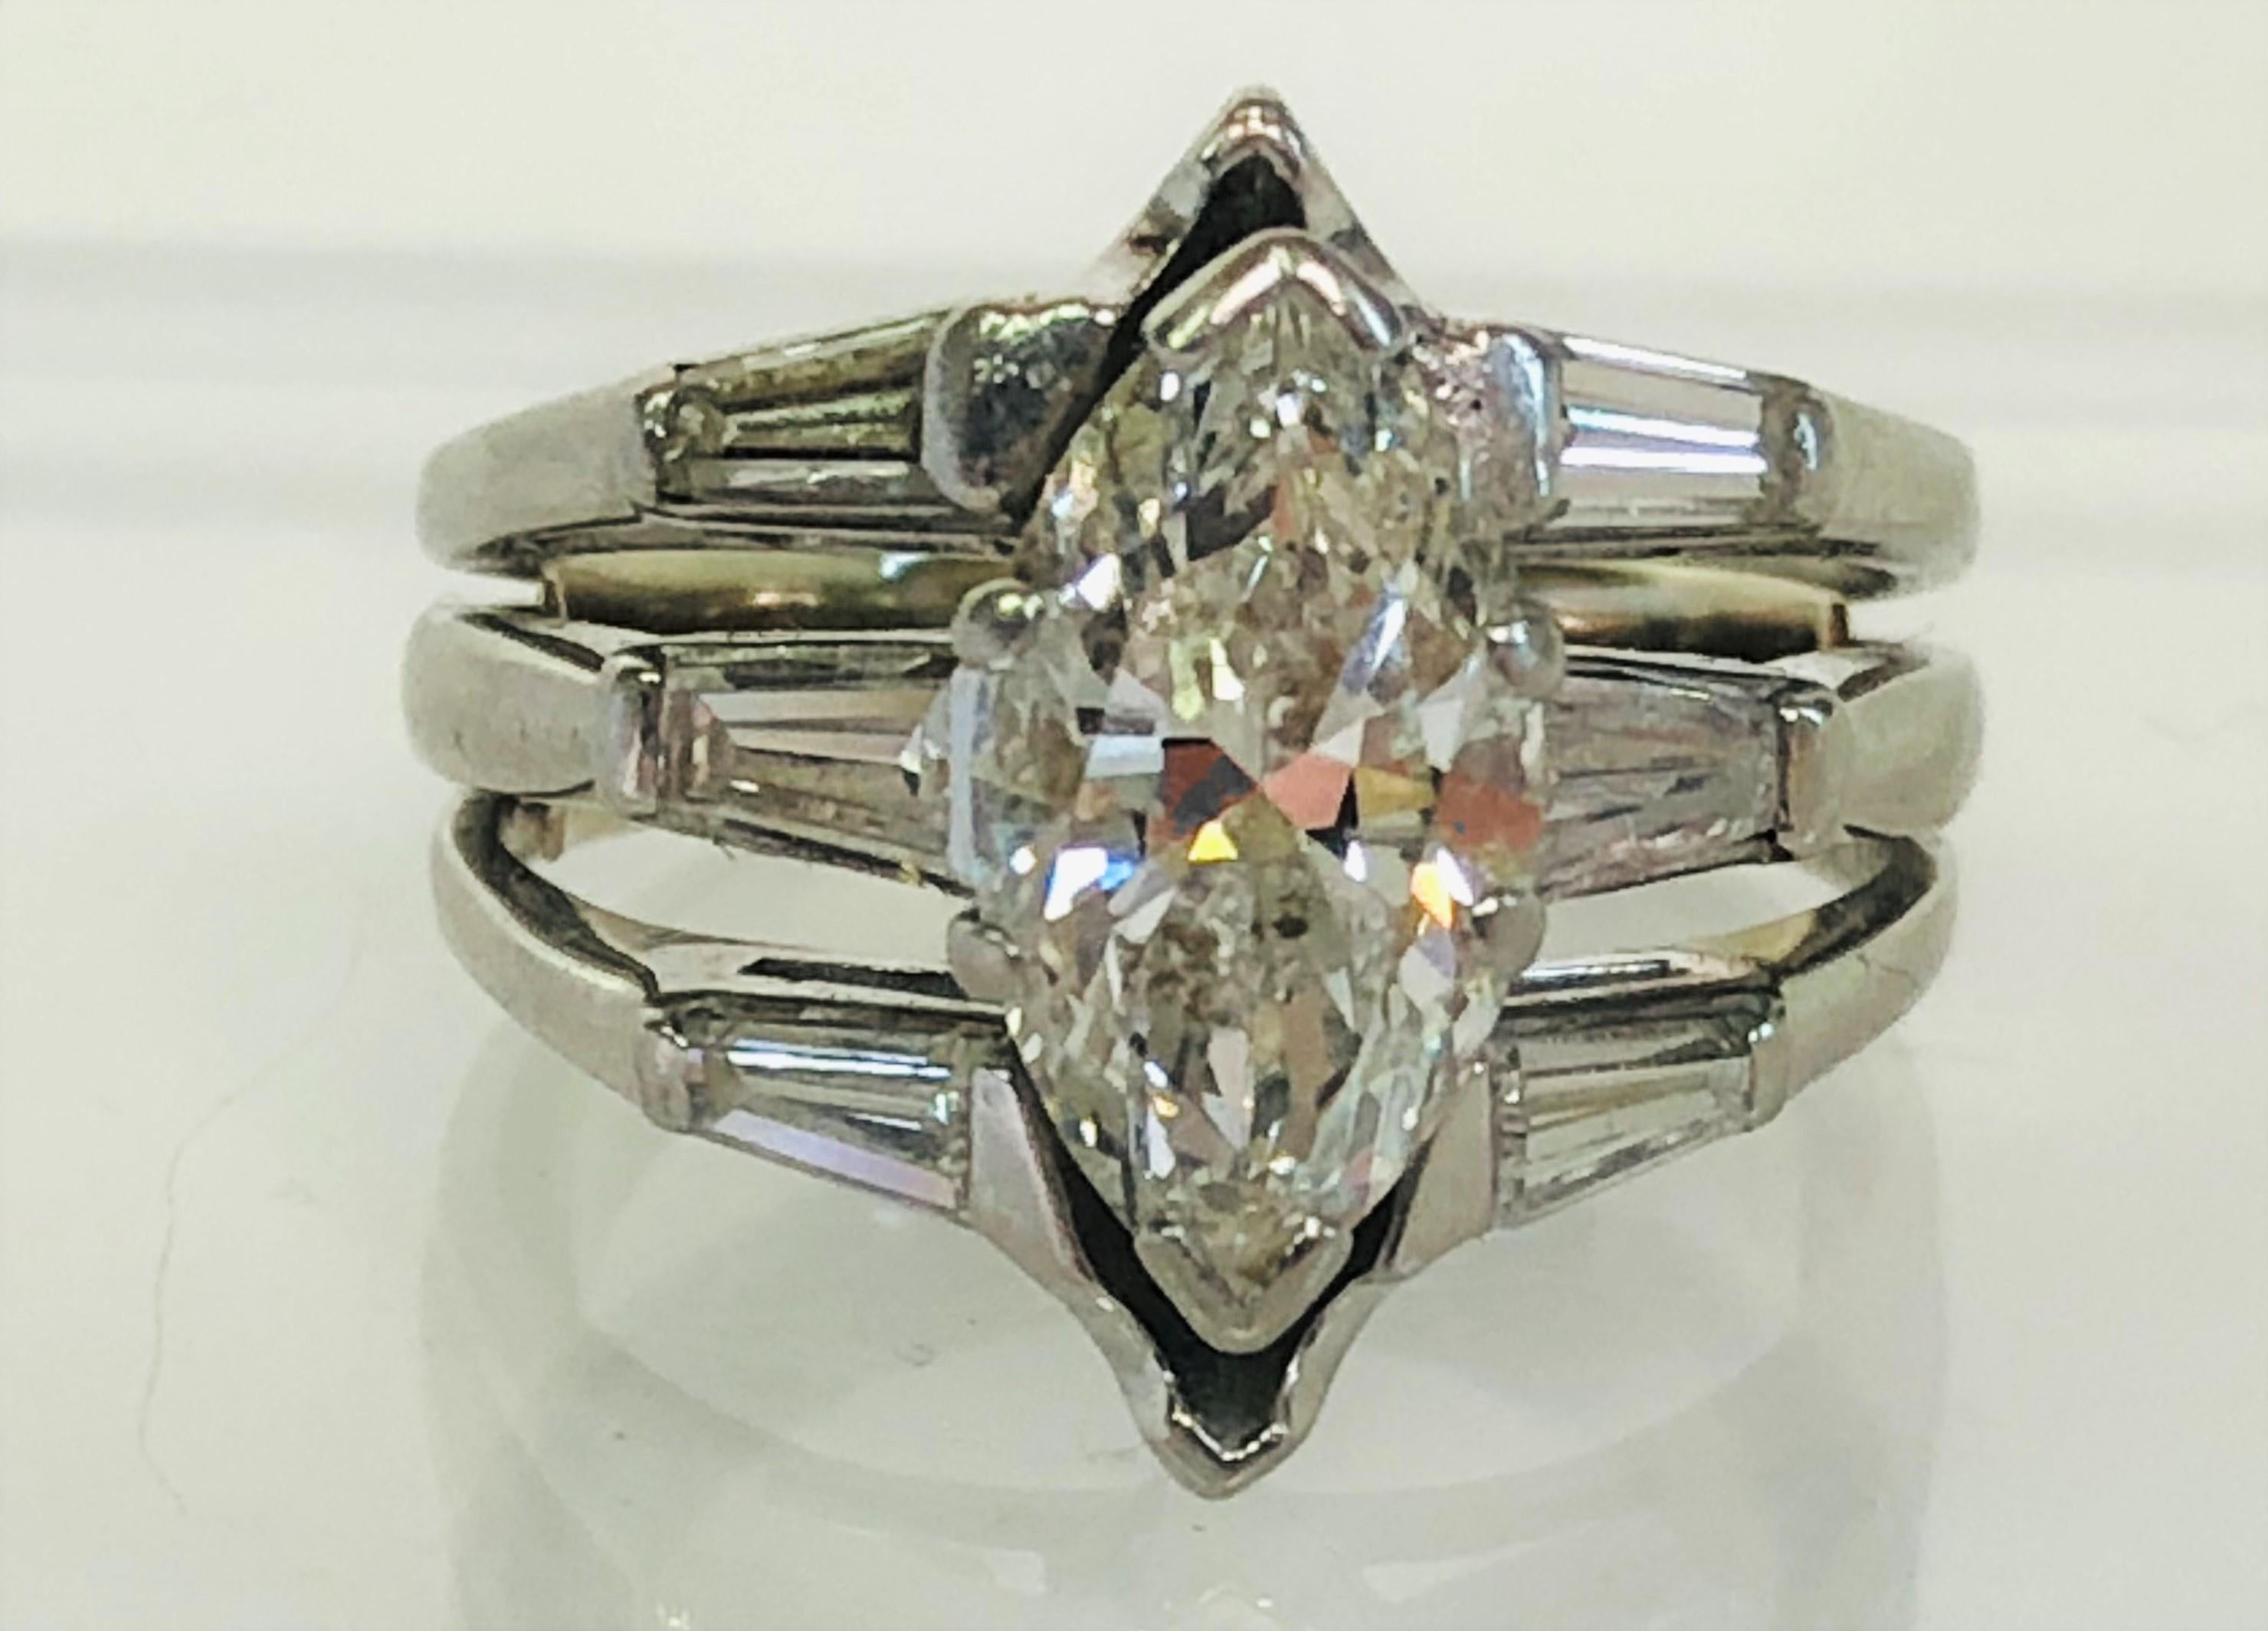 Dieser Ring funkelt aus dem ganzen Raum!
Diamant im Marquise-Schliff, ca. 2,33ct, Farbe I-J, Reinheit SI
Sechs spitz zulaufende Baguette-Diamanten, jeweils etwa 0,11ct.  Ein Baguette hat einen kleinen Chip
Größe 6 (mit innerem